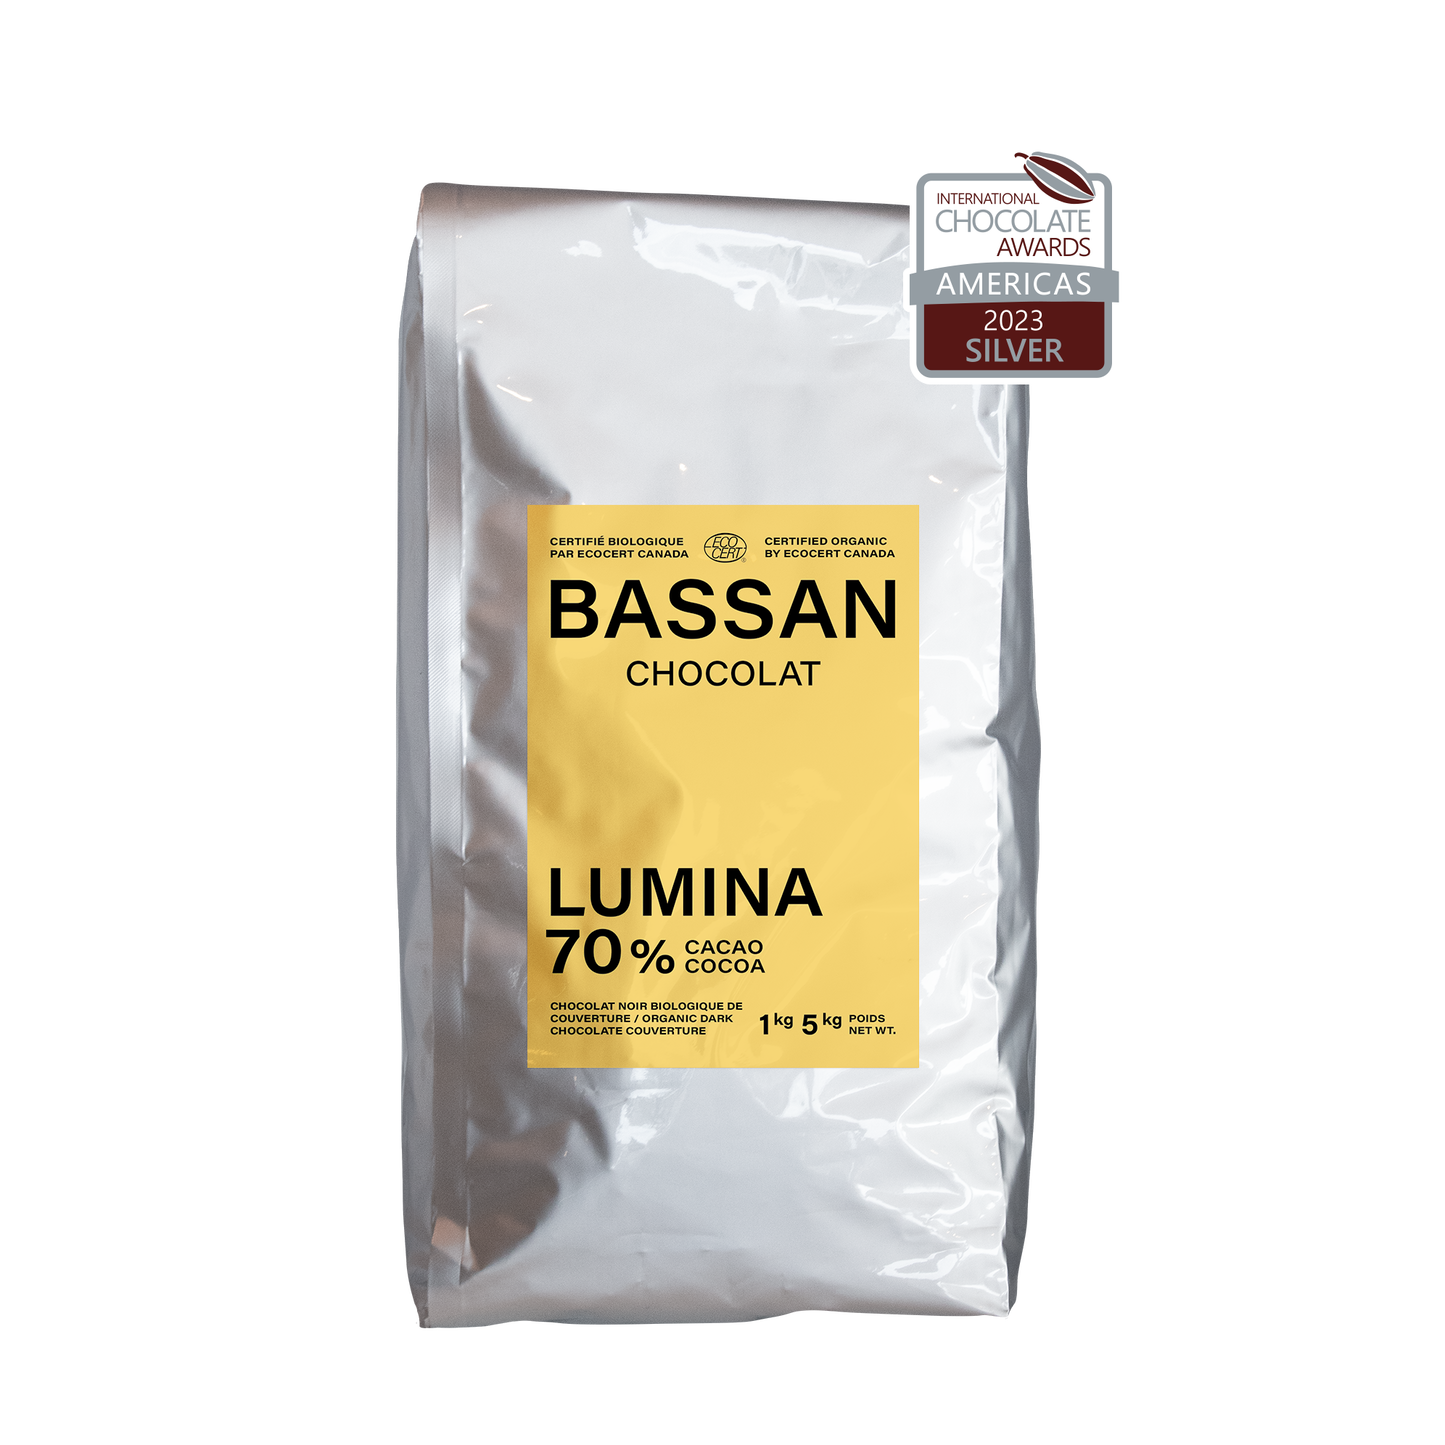 Chocolat noir biologique : Lumina 70% cacao - Bassan